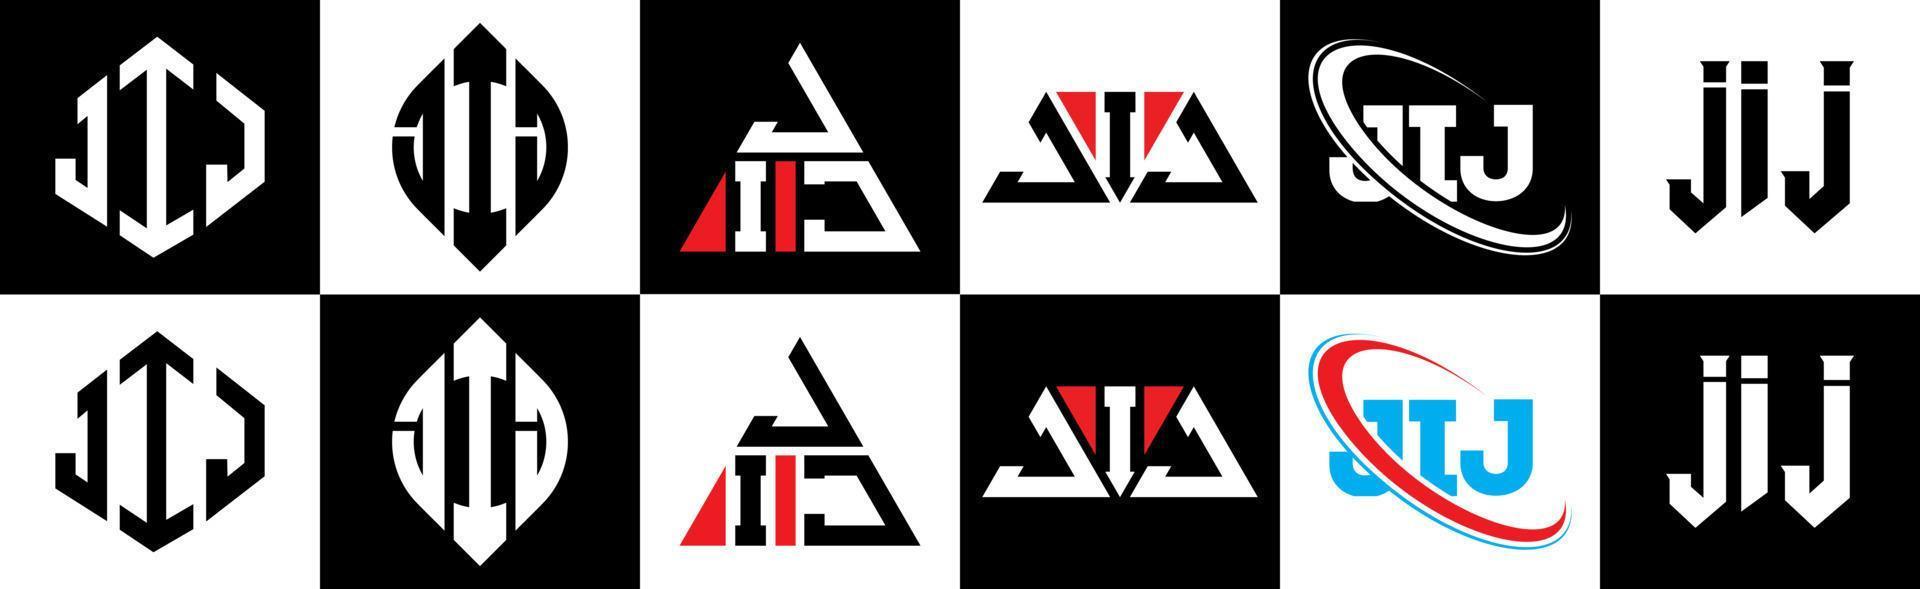 Jij-Buchstaben-Logo-Design in sechs Stilen. Jij-Polygon, Kreis, Dreieck, Sechseck, flacher und einfacher Stil mit schwarz-weißem Buchstabenlogo in einer Zeichenfläche. Jij minimalistisches und klassisches Logo vektor